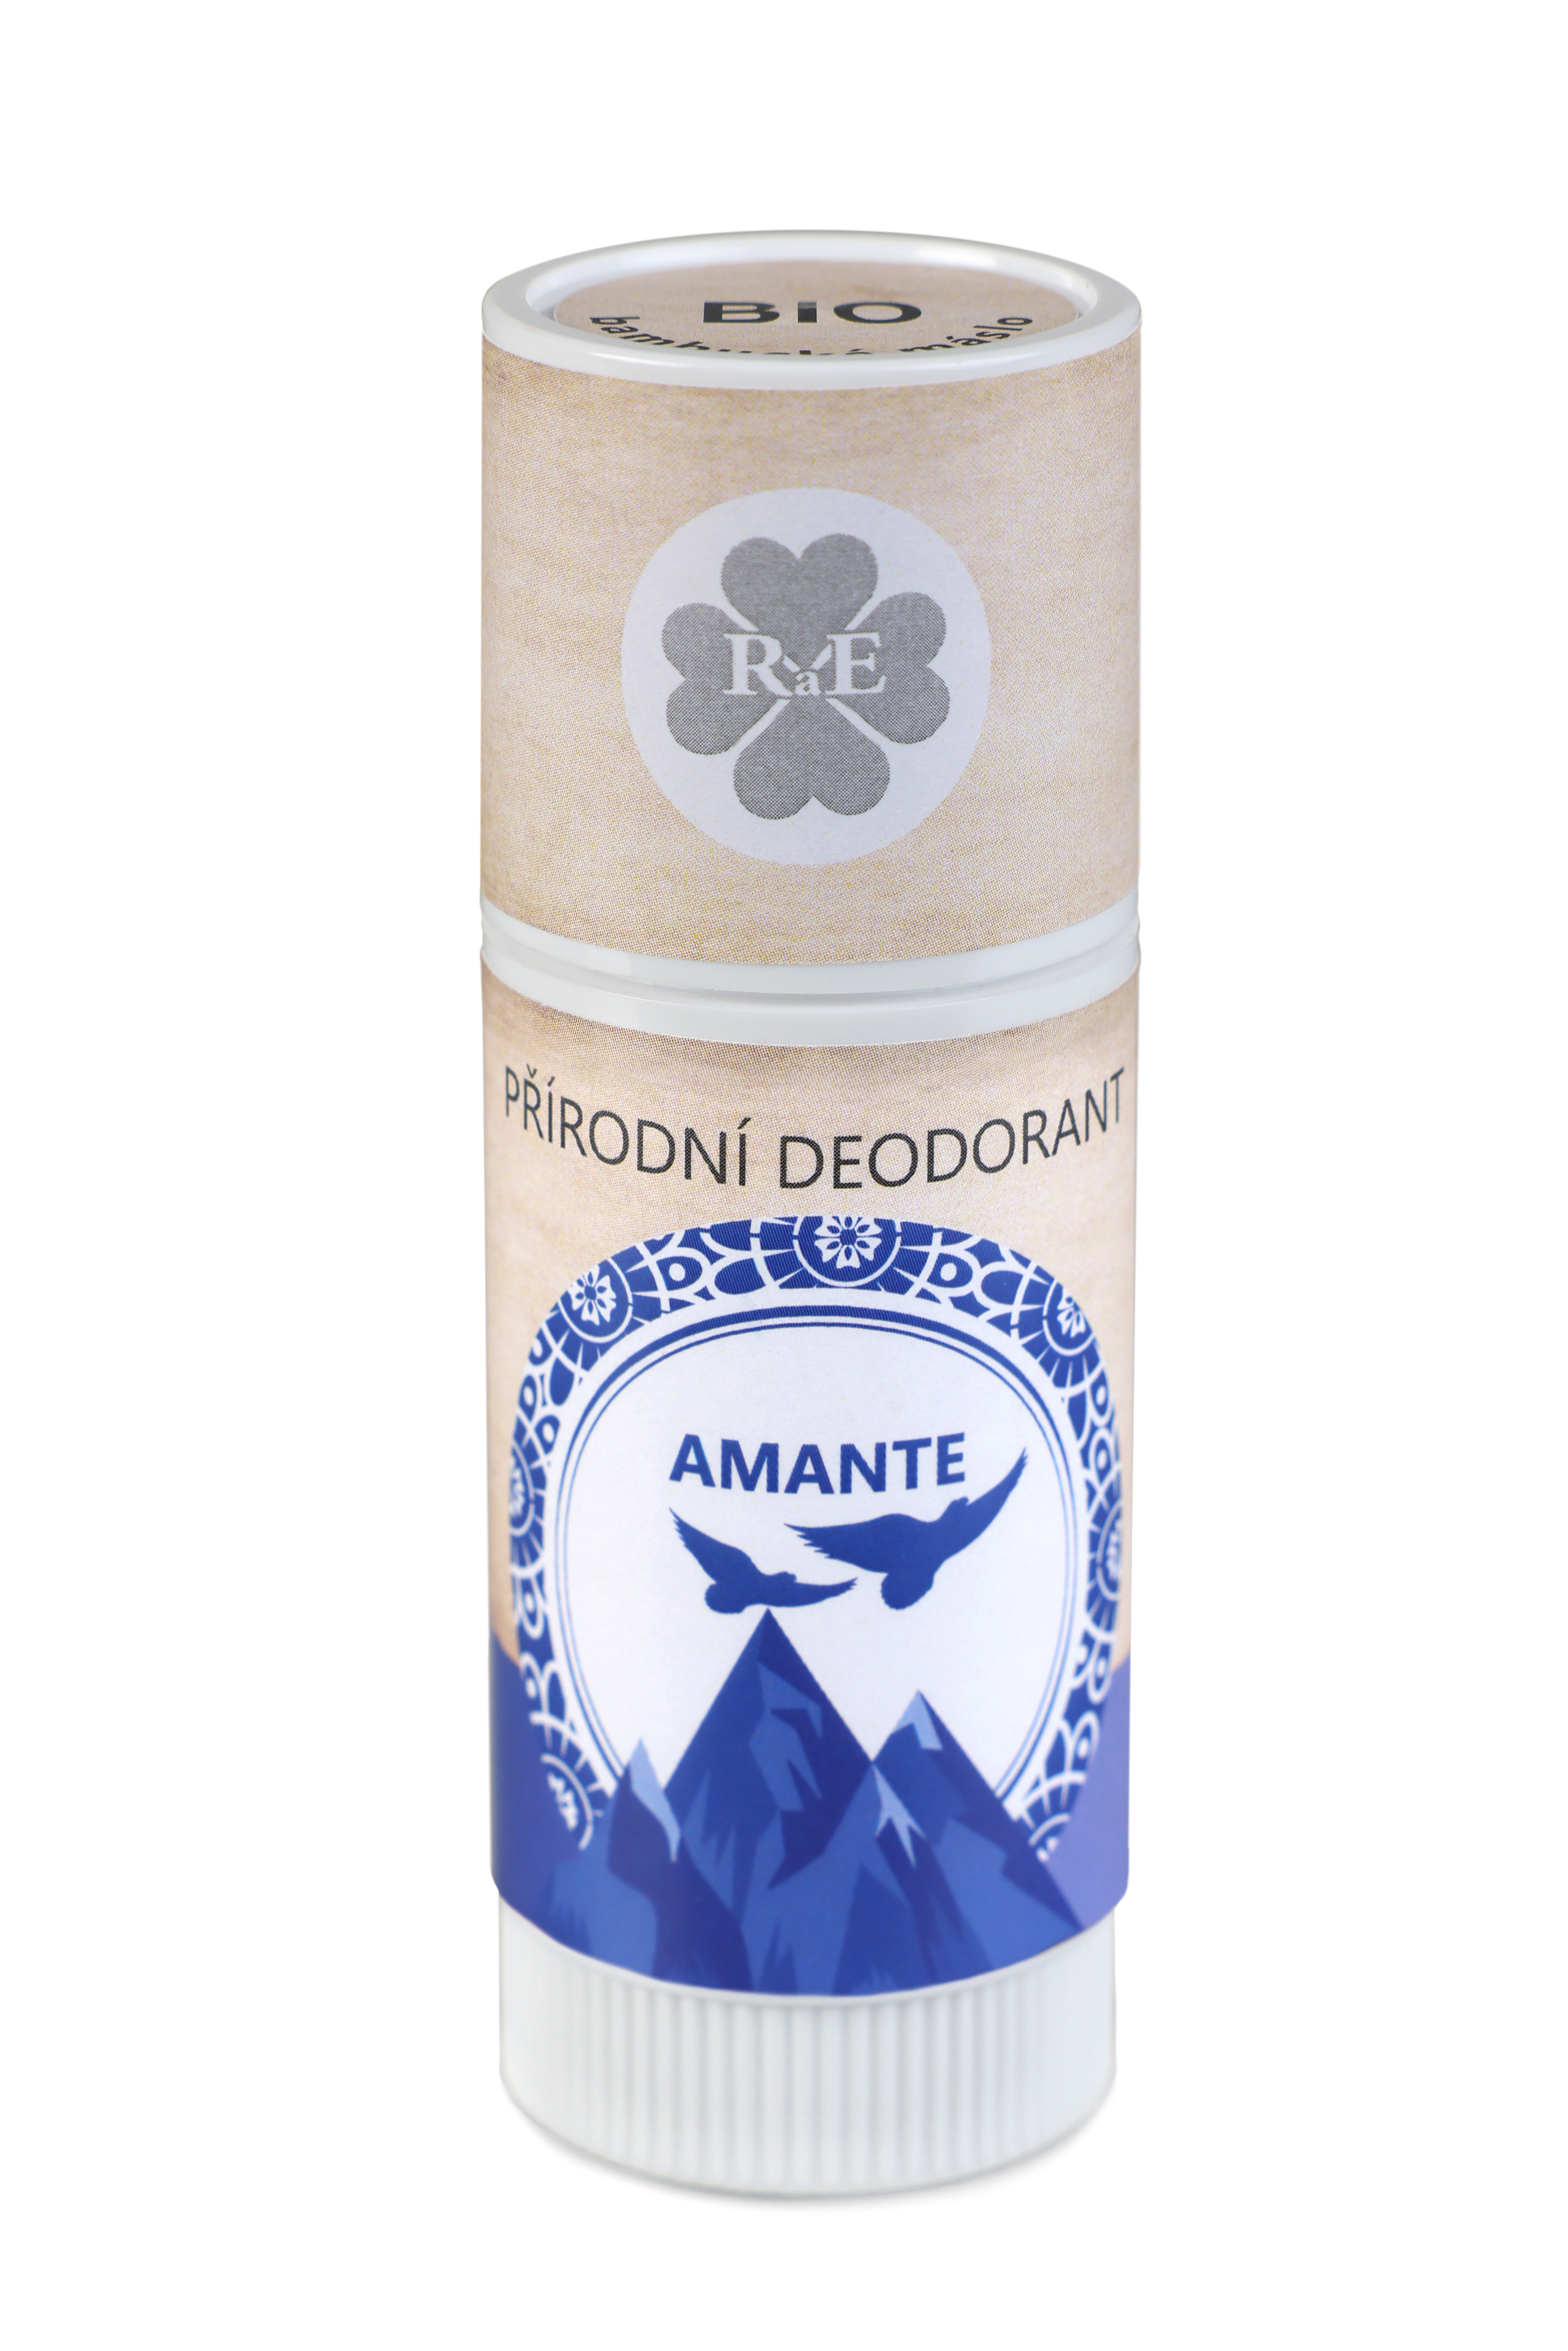 RaE Přírodní deodorant pro muže Amante 25ml